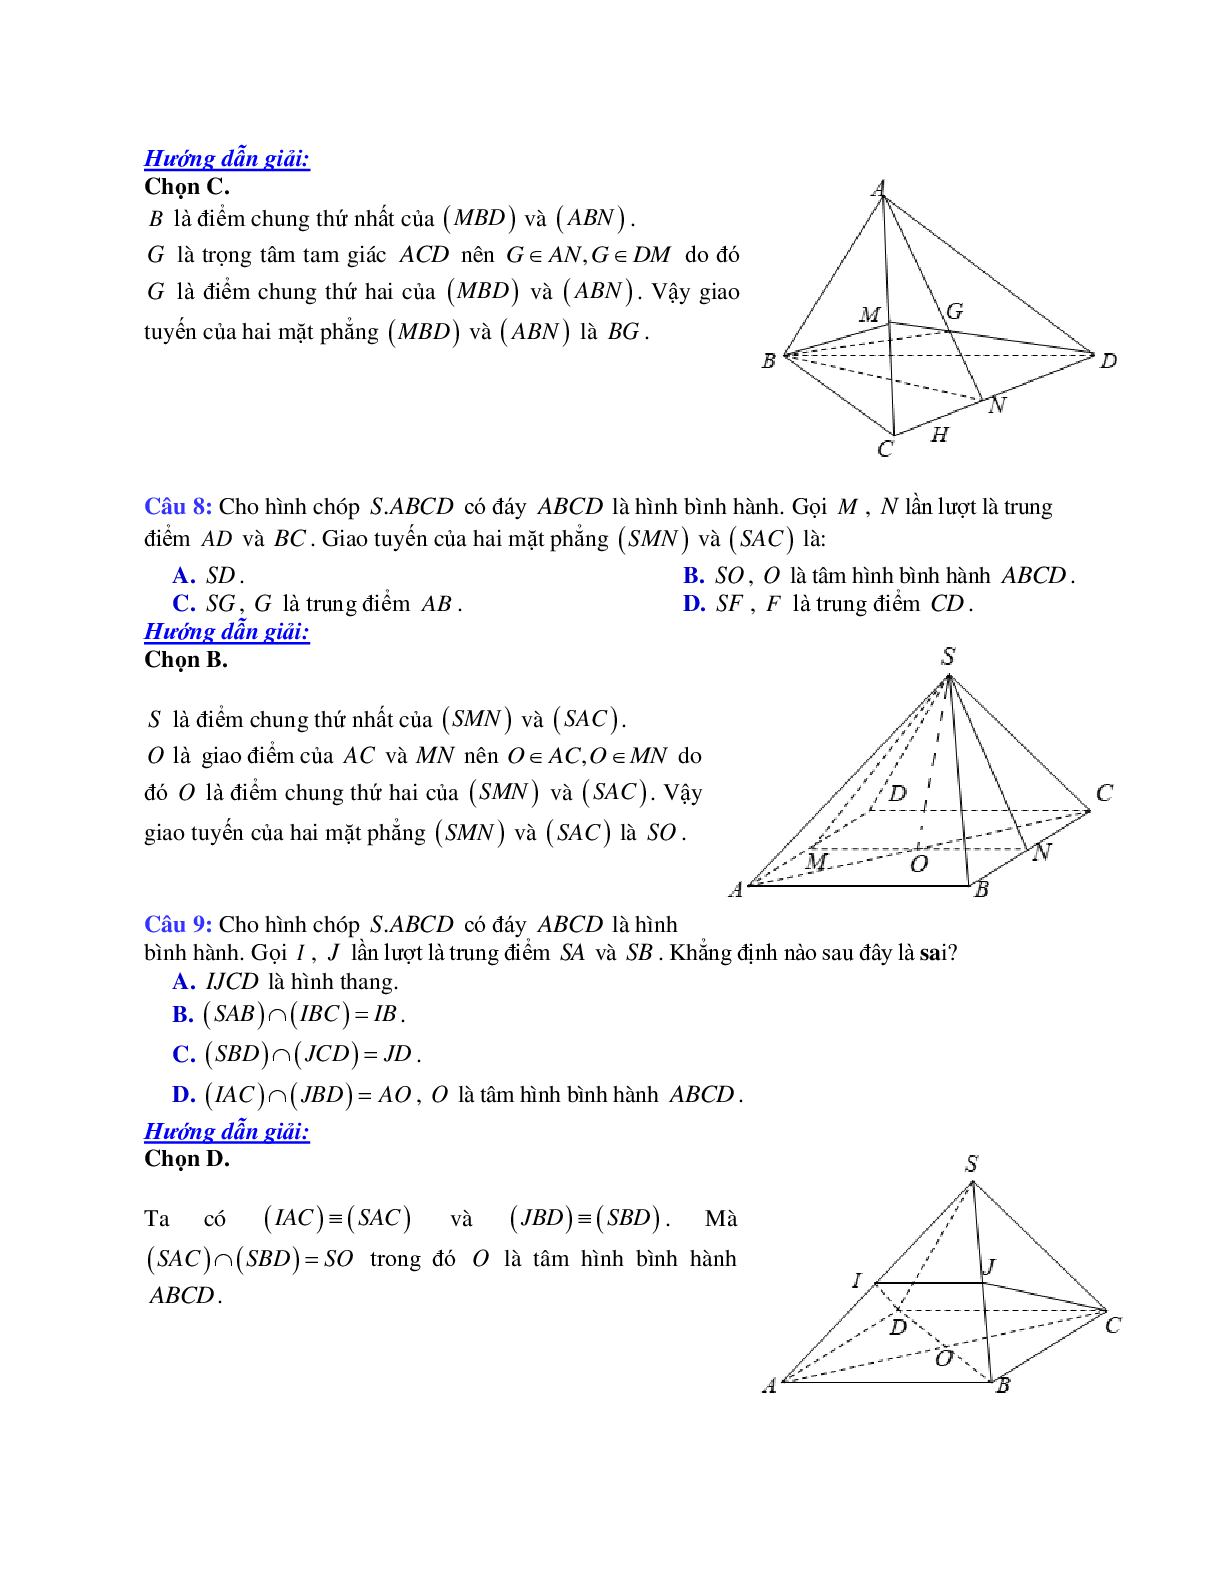 Cách xác định giao tuyến của hai mặt phẳng (trang 4)